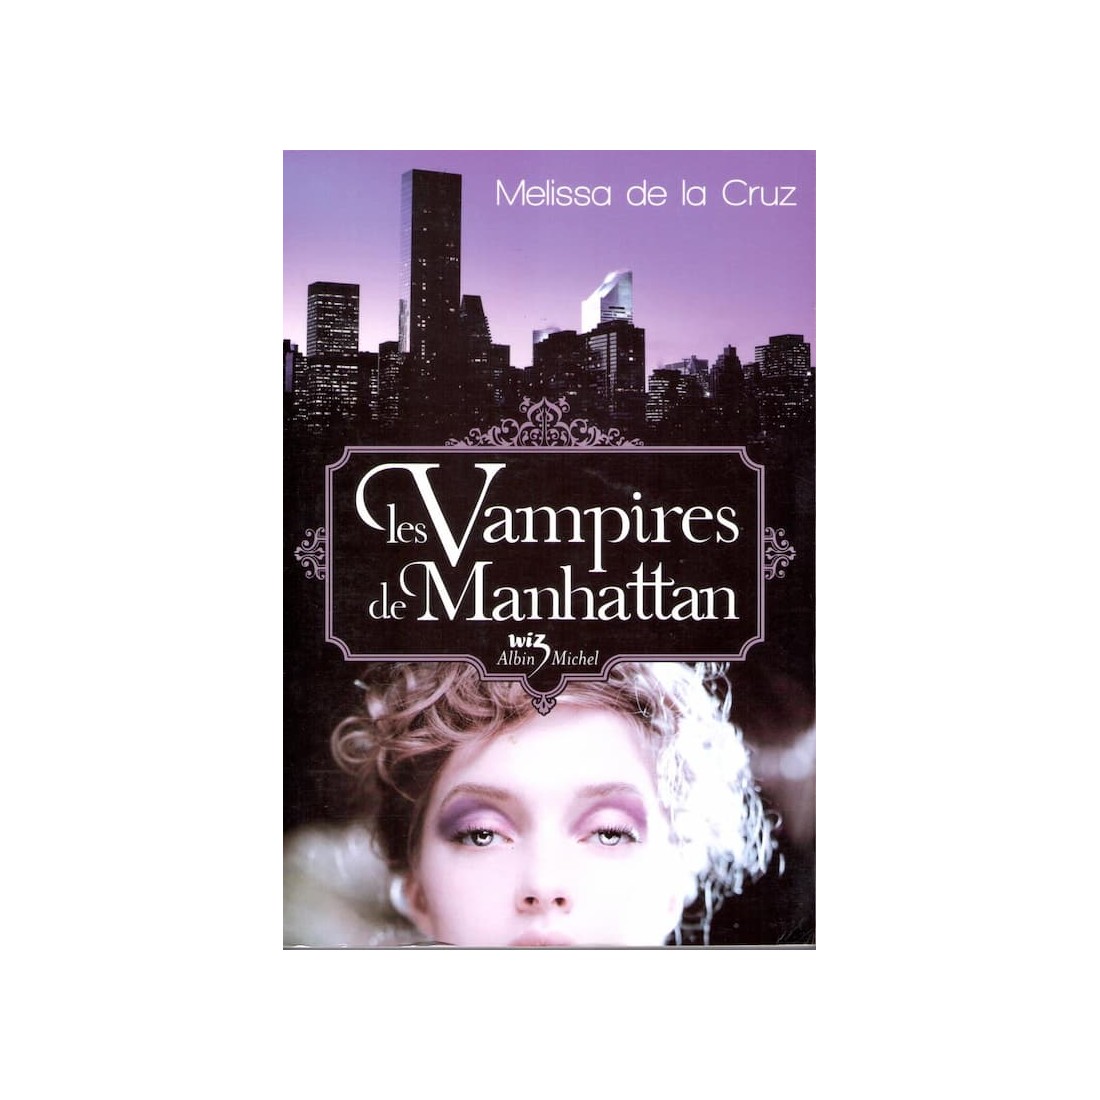 Les vampires de Manhattan - Roman de Melissa de la Cruz - Ocazlivres.com